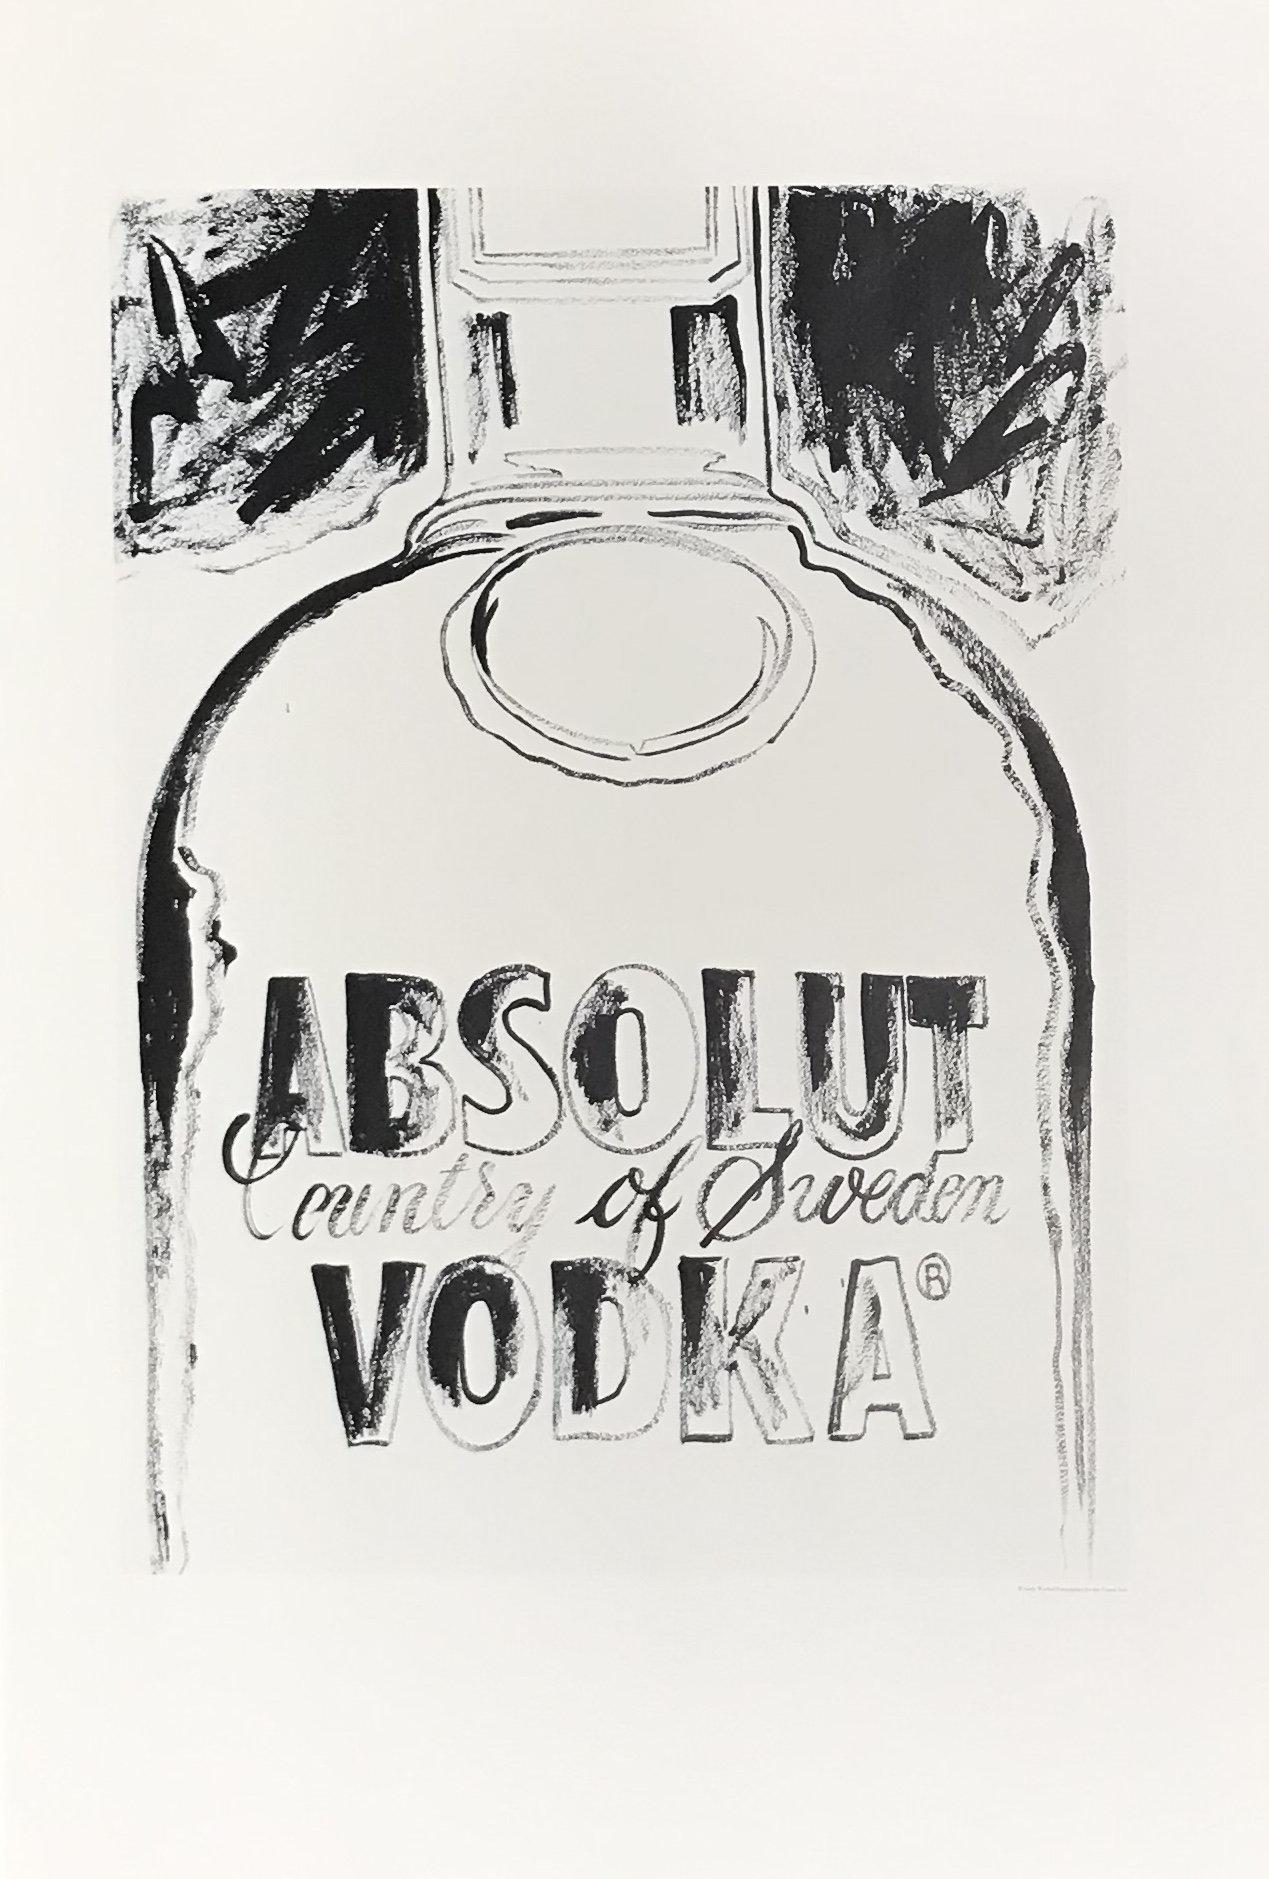 1999 Andy Warhol print Absolut VodKa 3 Pop Art